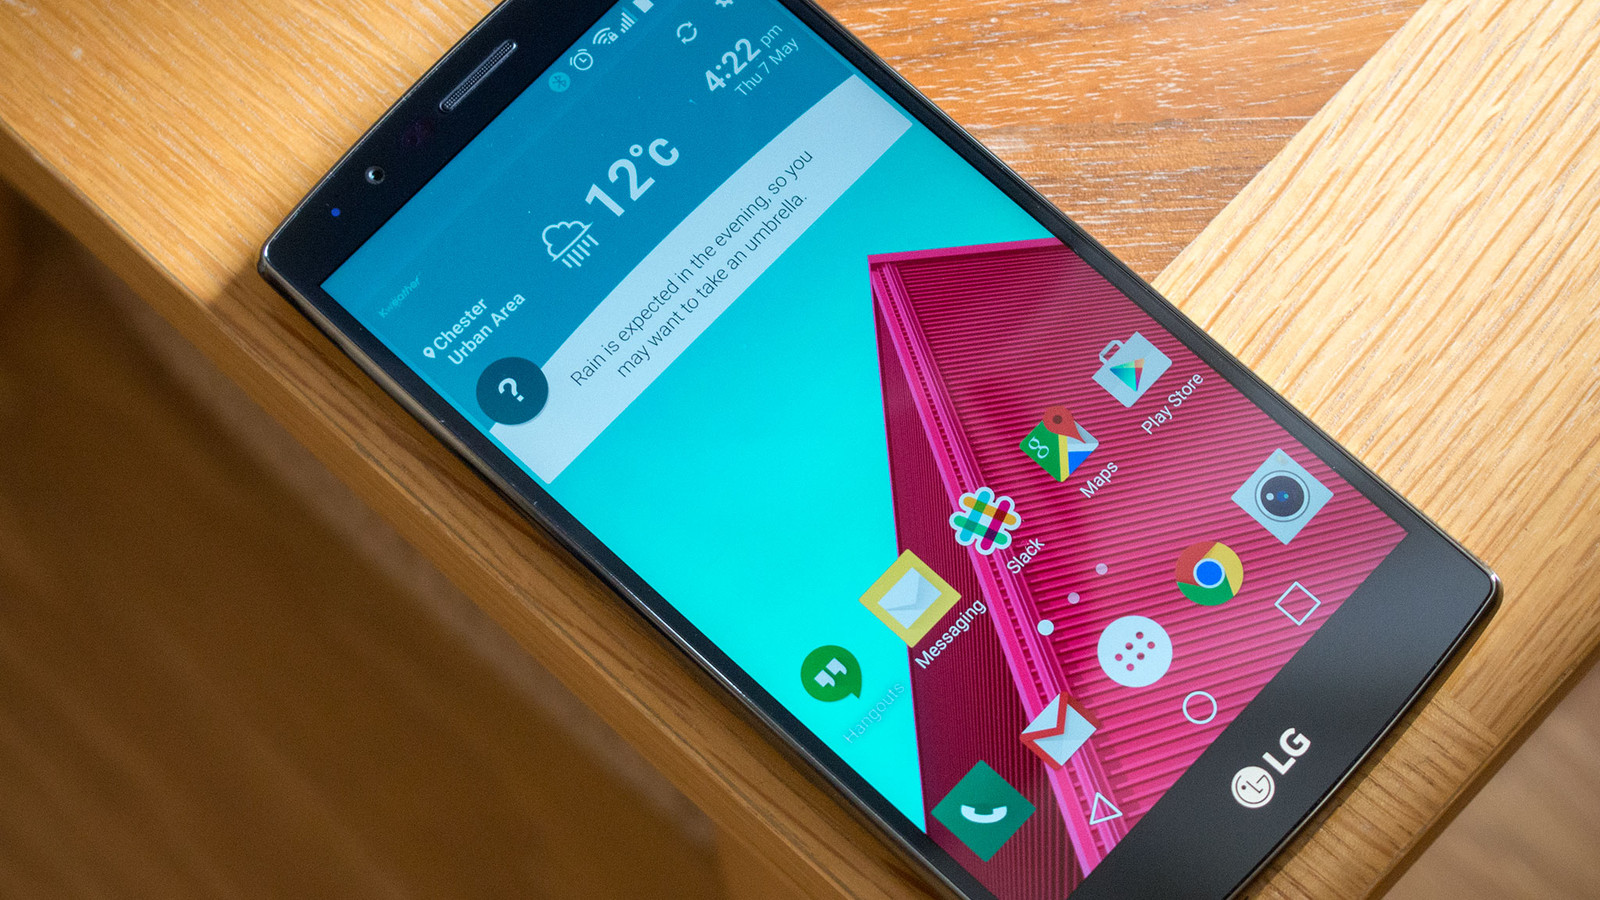 LG G4 Kullanıcılarına Android 7.0 Nougat Müjdesi!